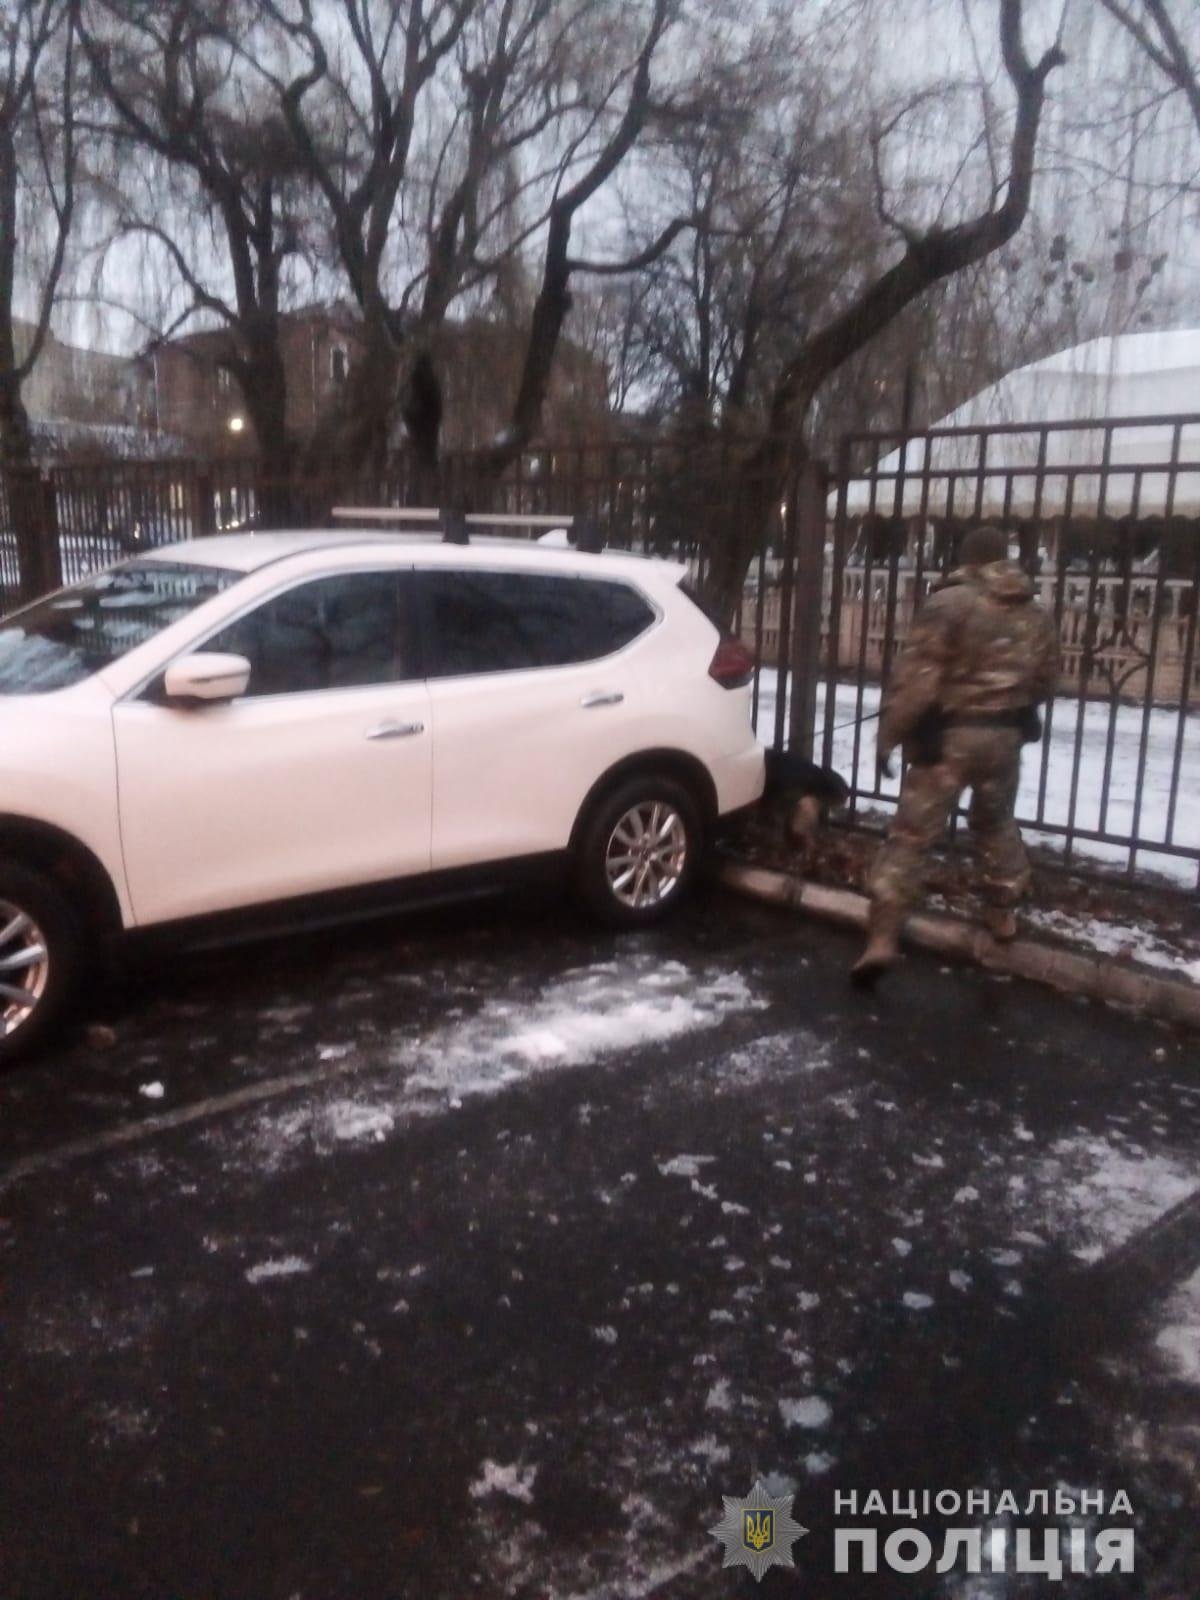 «Взрывчатка в припаркованном автомобиле»: в Харькове неизвестные «заминировали» супермаркеты и суд, - ФОТО